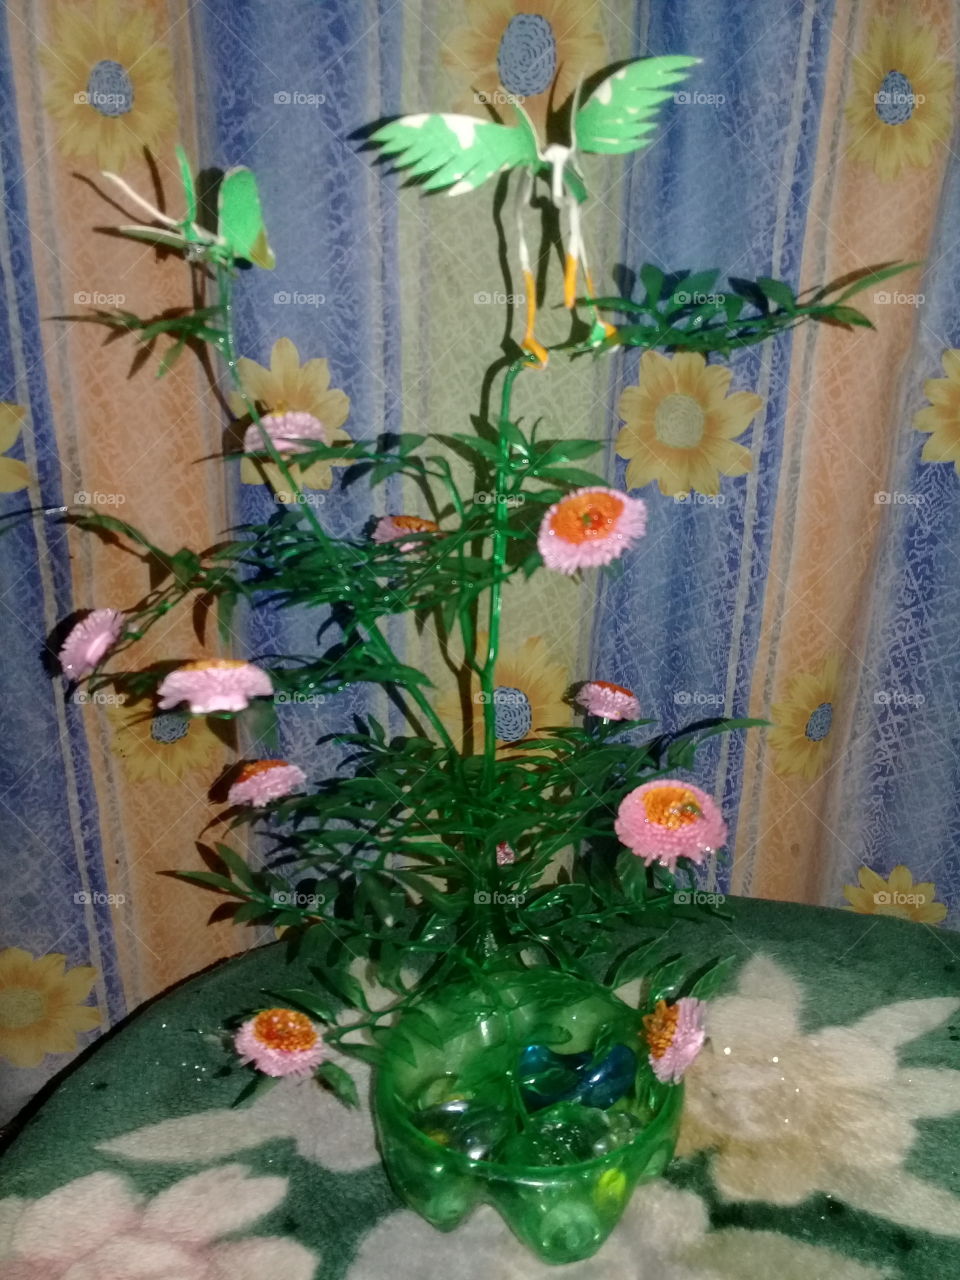 Flower base